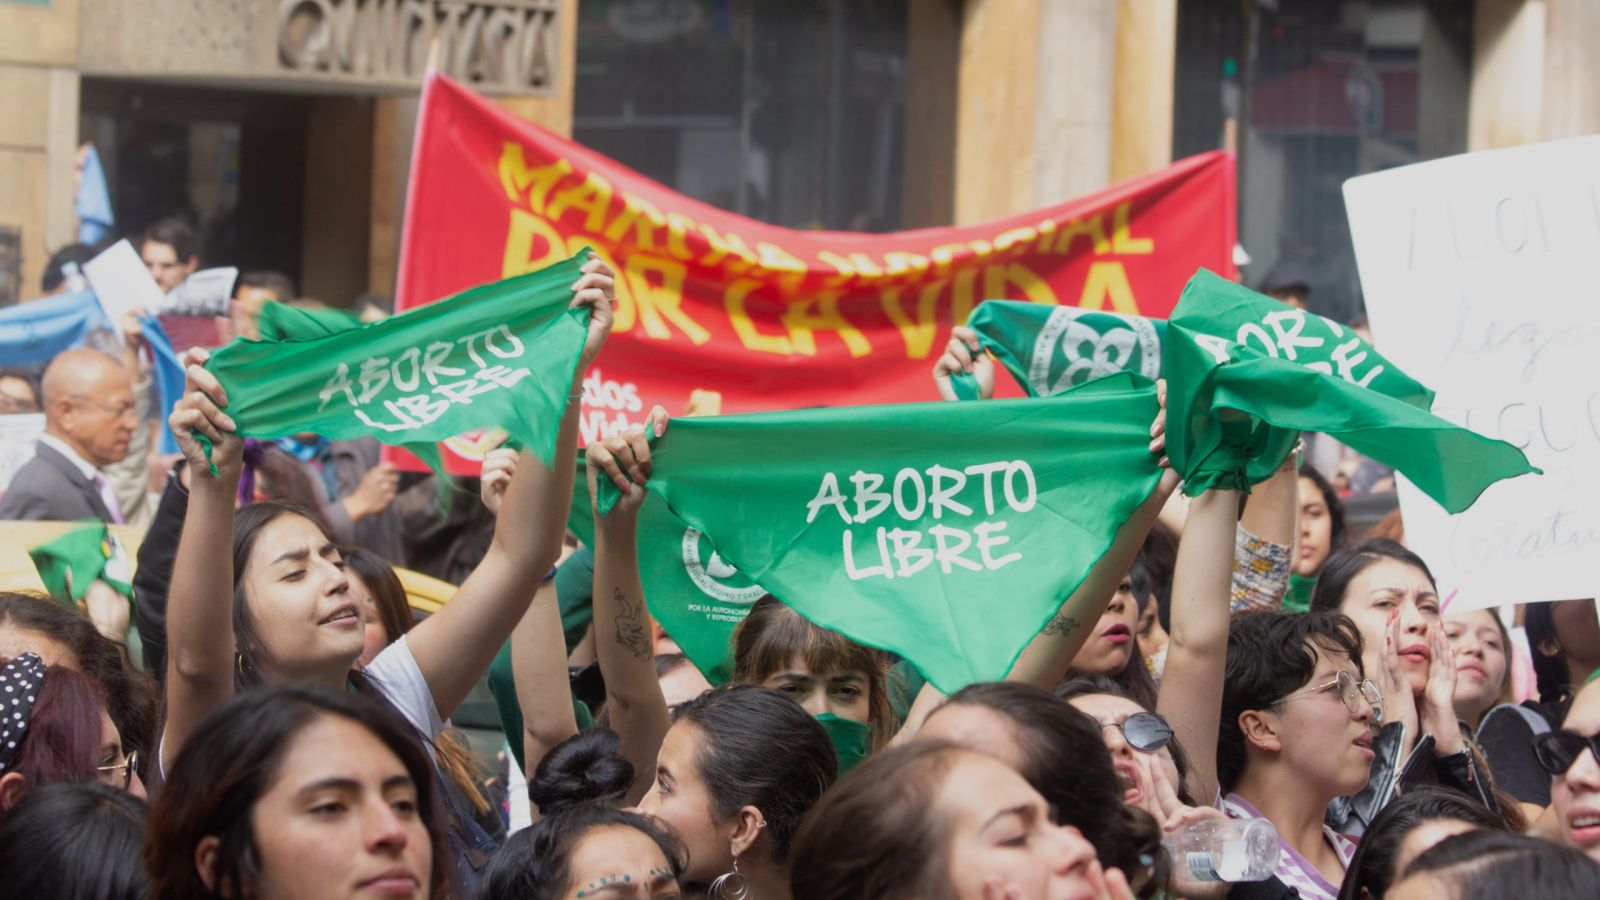 Guaicurus News - Espanha quer permitir abortos sem consentimento dos pais para maiores de 16 anos